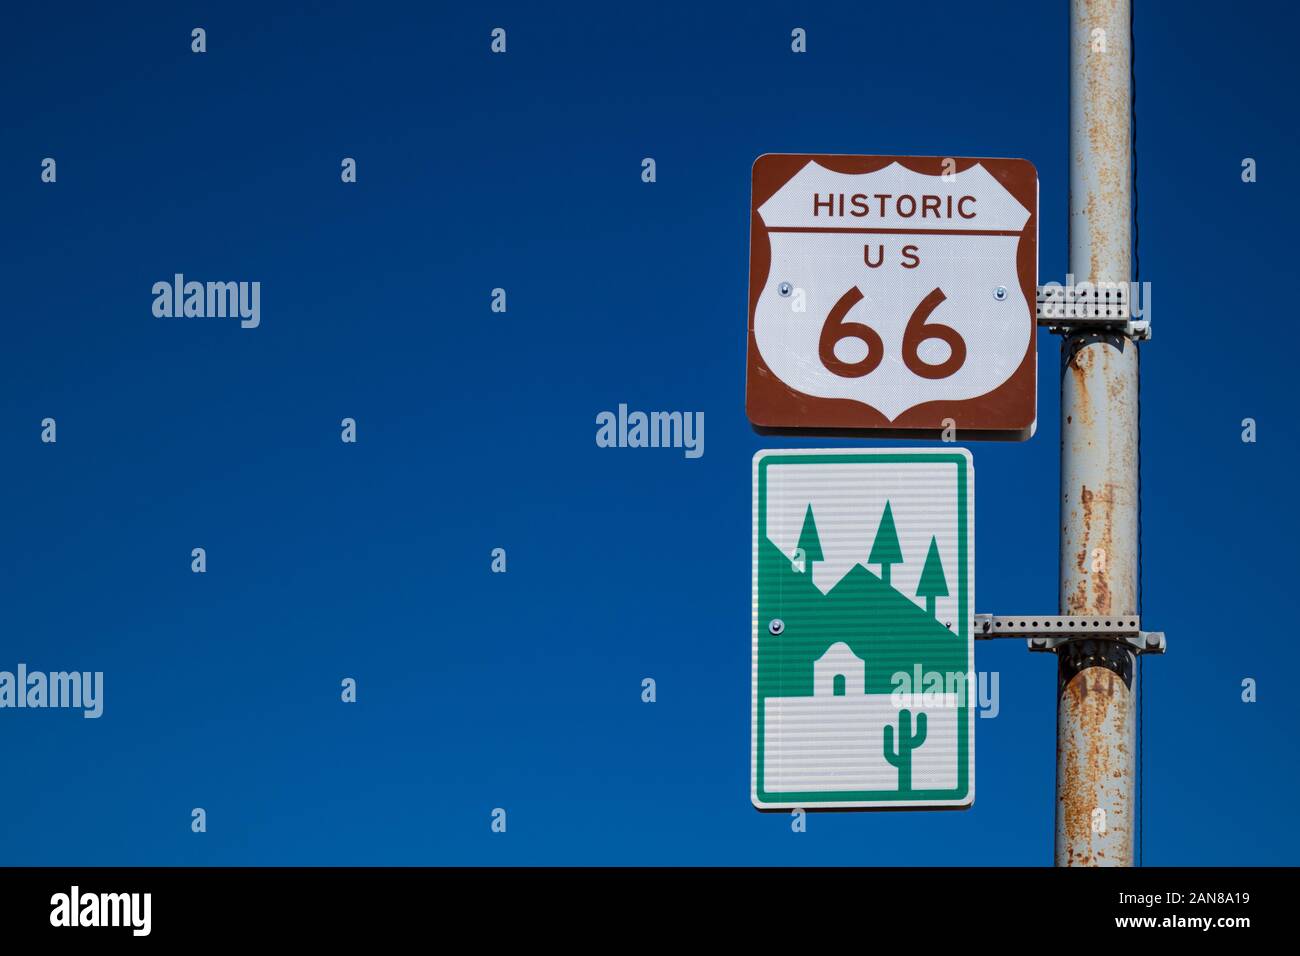 Flagstaff, Arizona, USA. Le 25 mai 2019. L'historique route 66 road sign against clear blue sky background. Roadtrip pour les conducteurs qui l'amour aventures. S COPIE Banque D'Images